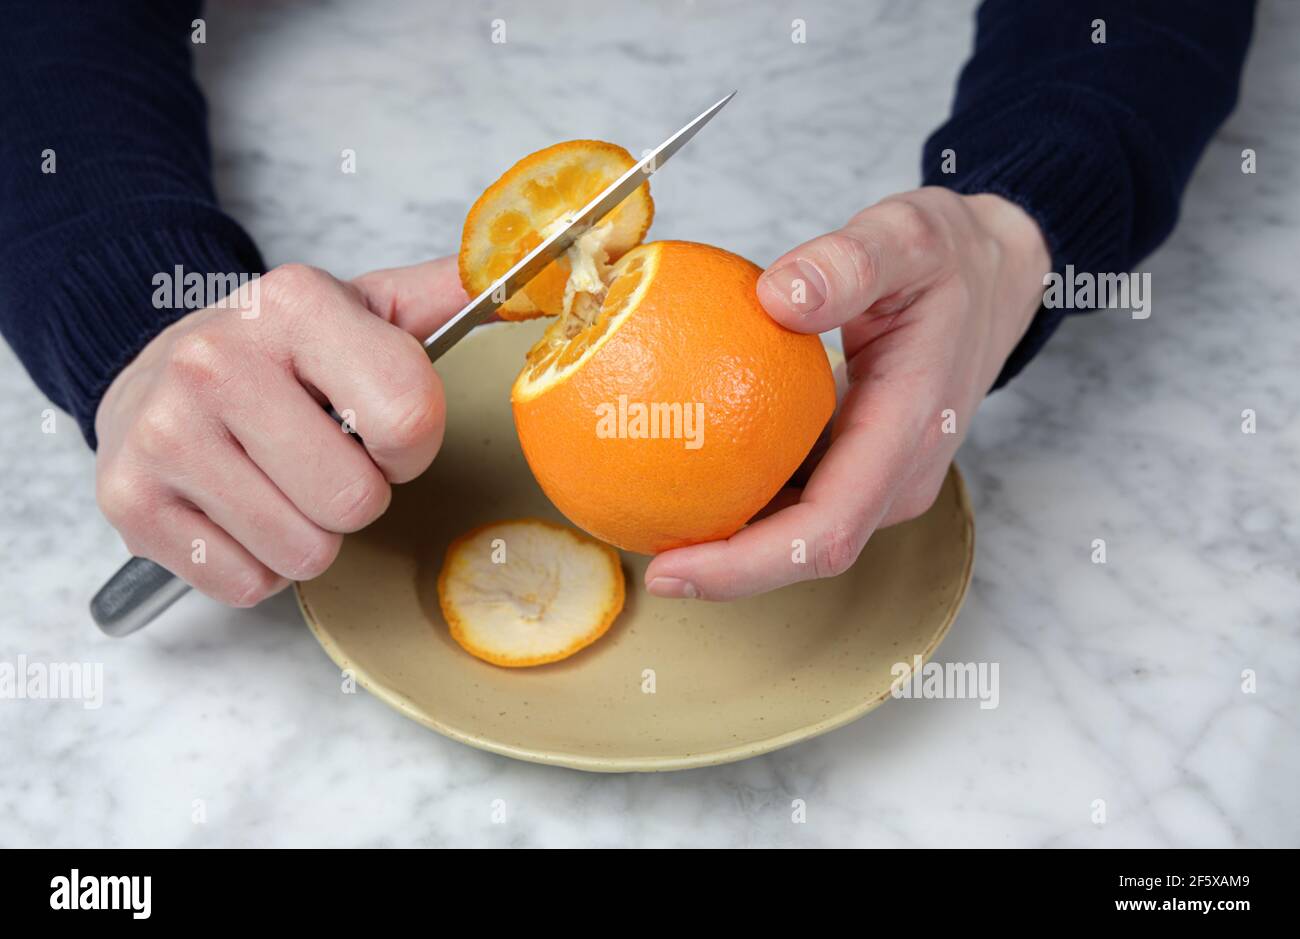 Les mains de l'homme épluchant une orange avec un couteau. Concept d'alimentation saine Banque D'Images